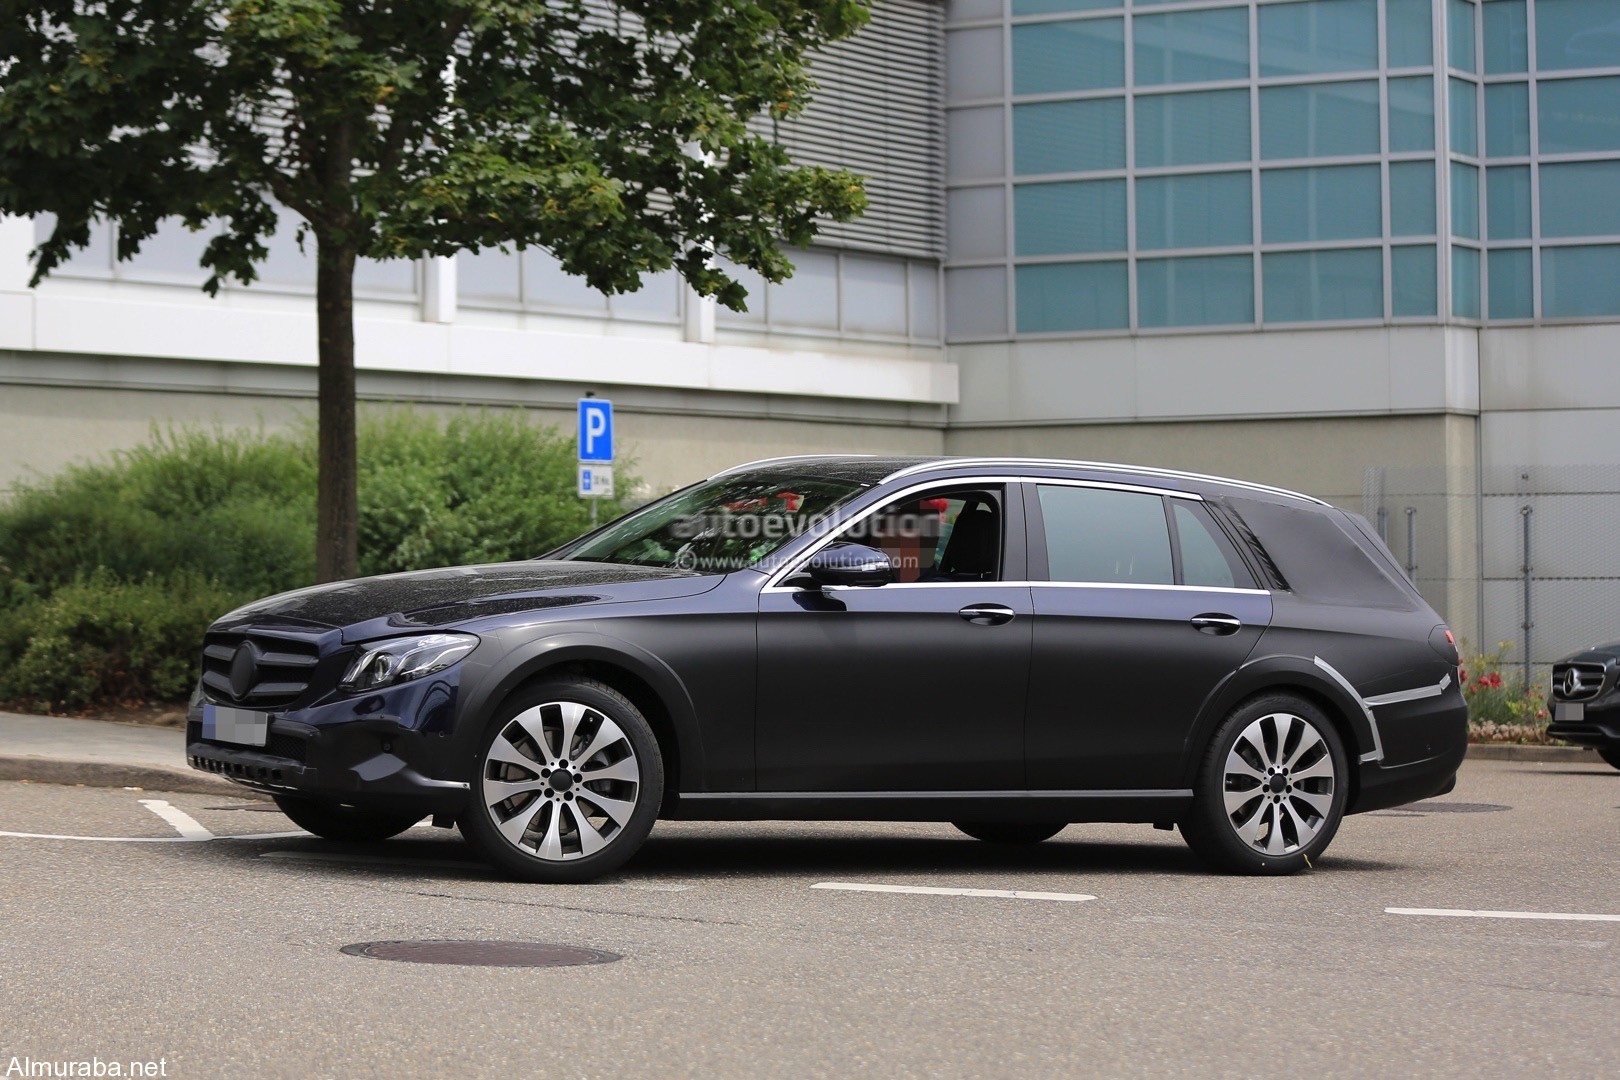 “فيديو وصور تجسسية” لمرسيدس بنز إي كلاس X213 المخصصة للطرق الوعرة Mercedes Benz